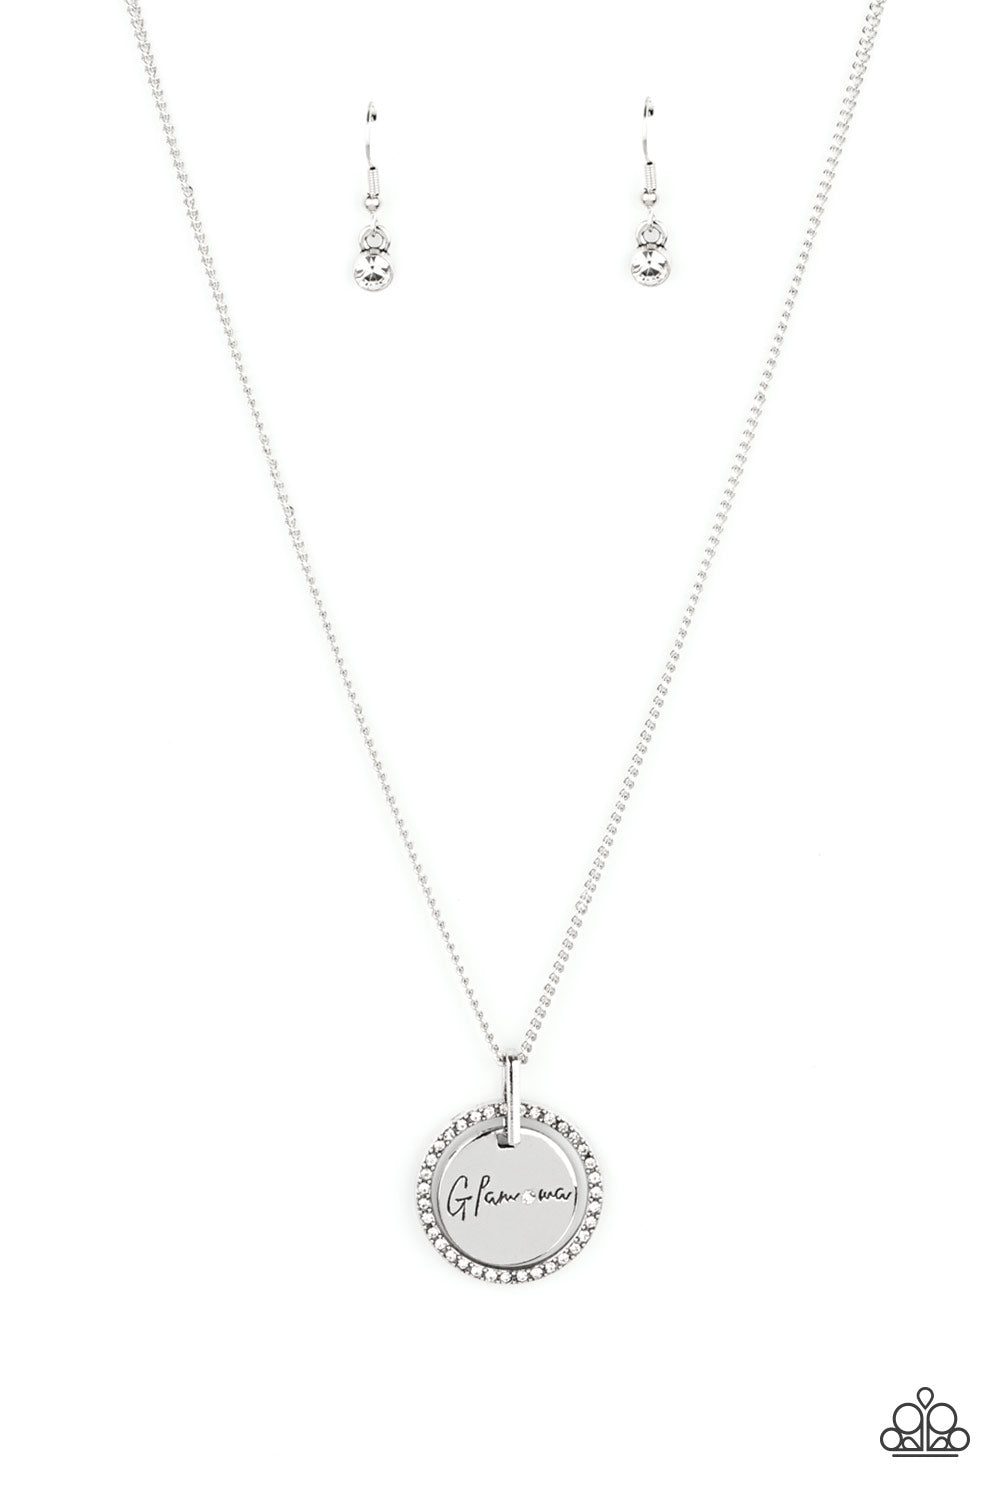 Glam-ma Glamorous - White Rhinestones/"Glamma" Stamped Pendant Paparazzi Necklace & matching earrings